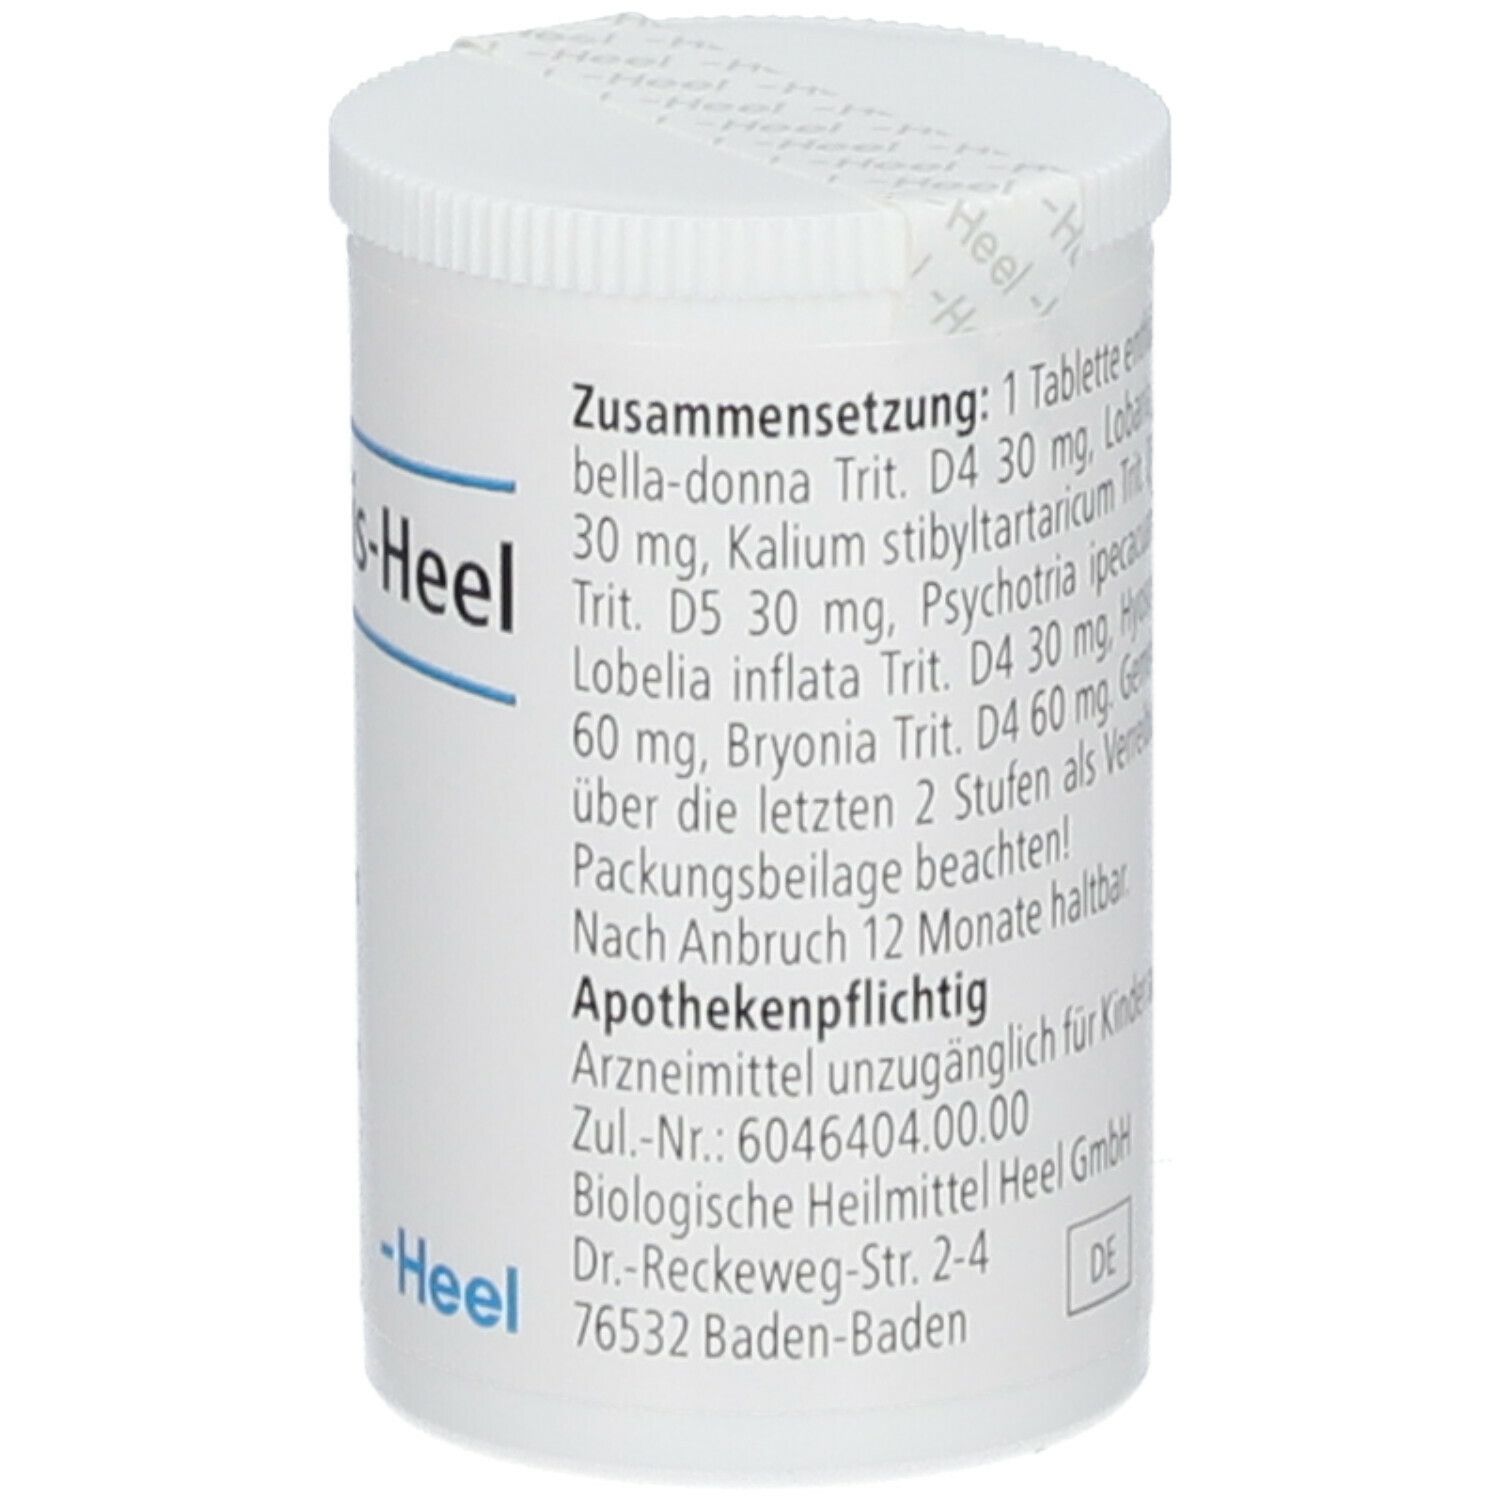 Bronchalis-Heel® Tabletten